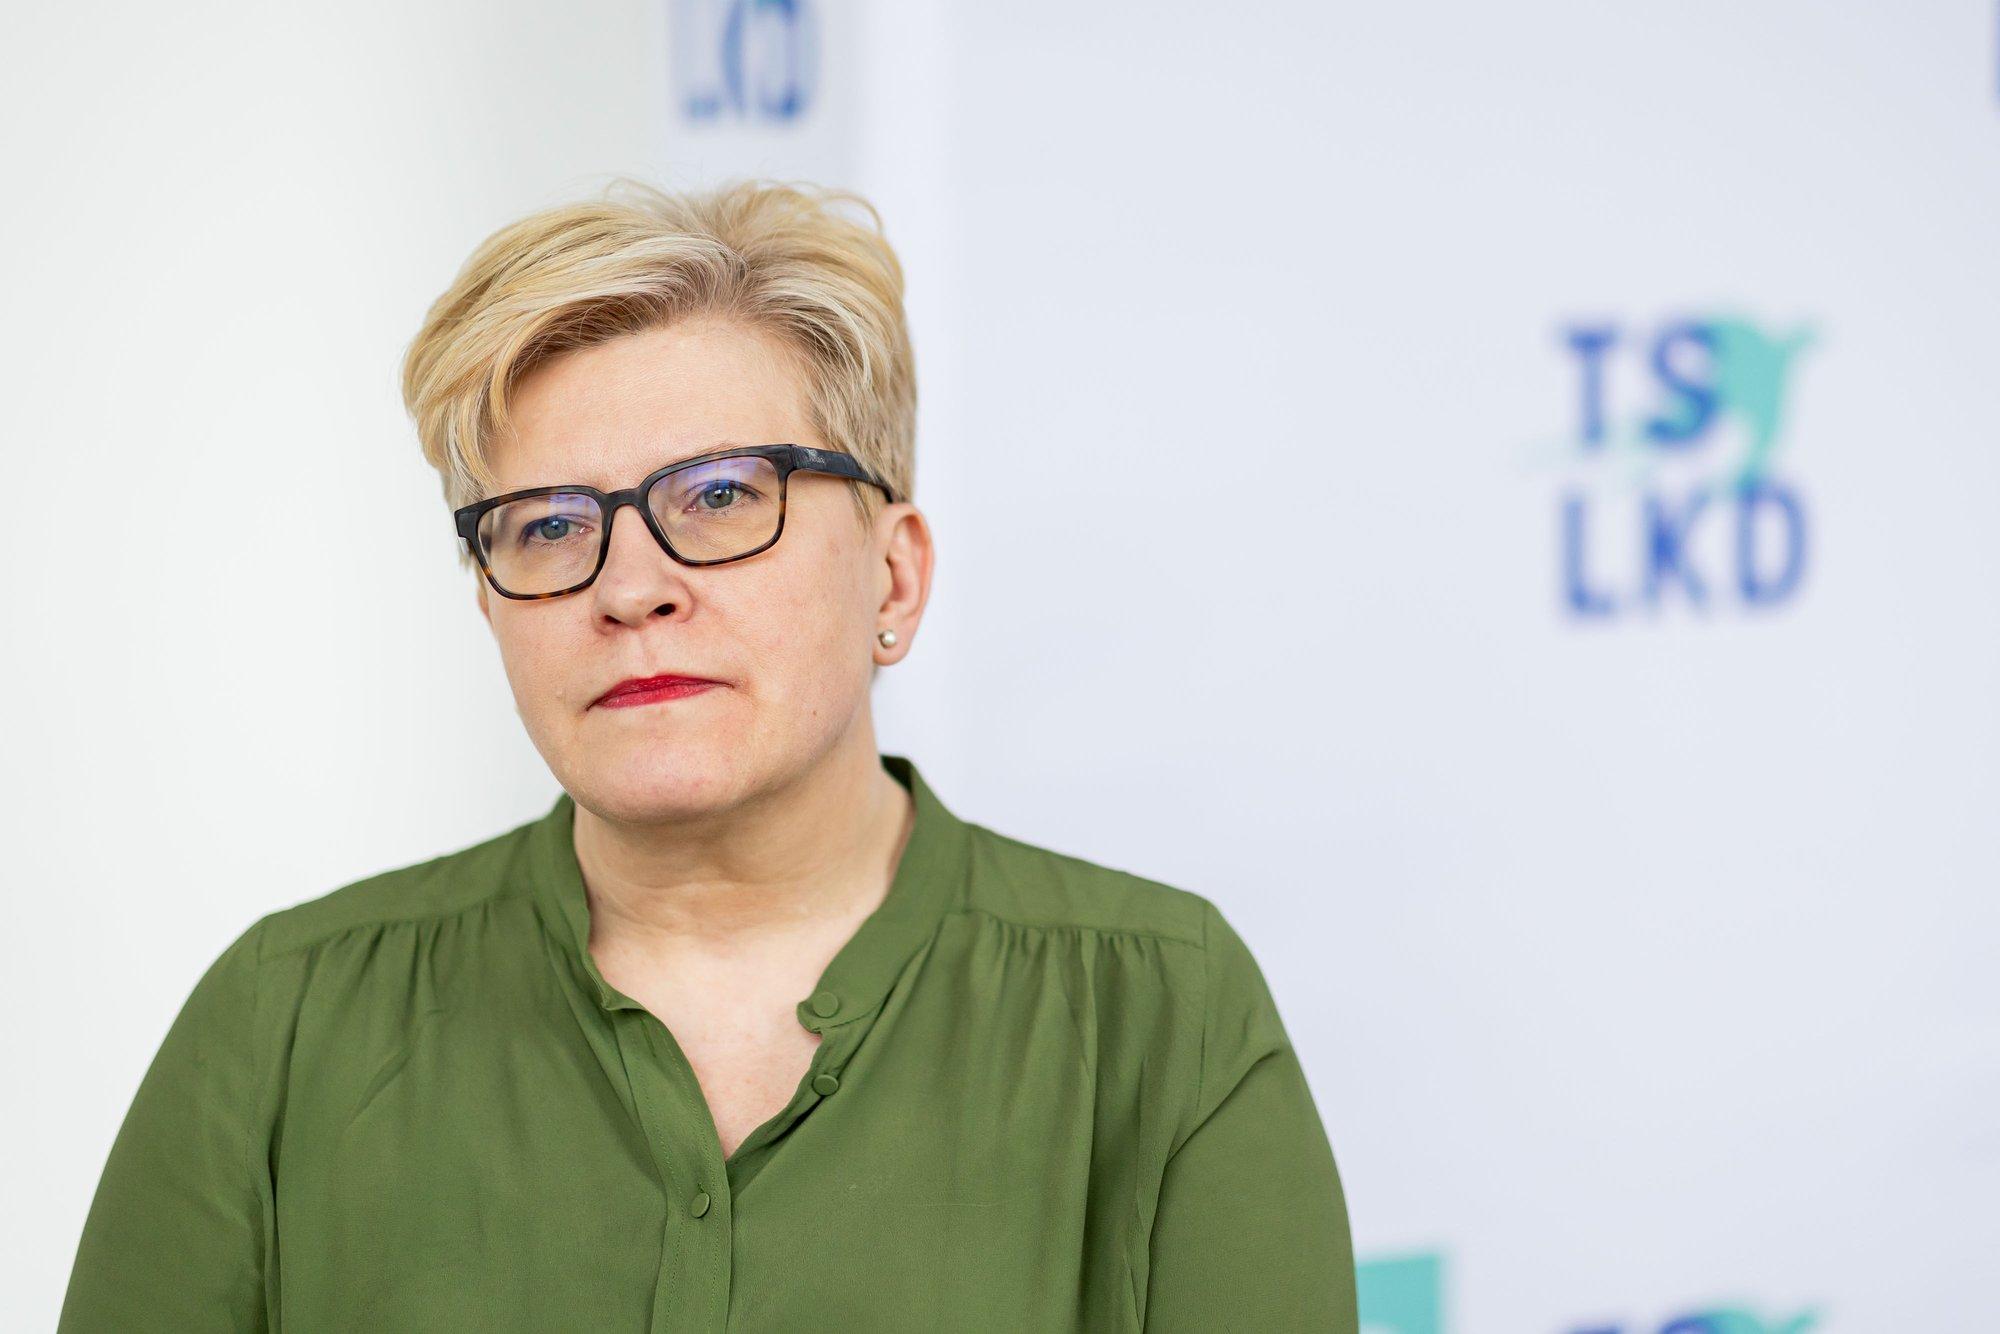 PM Šimonytė most distrusted public figure – survey